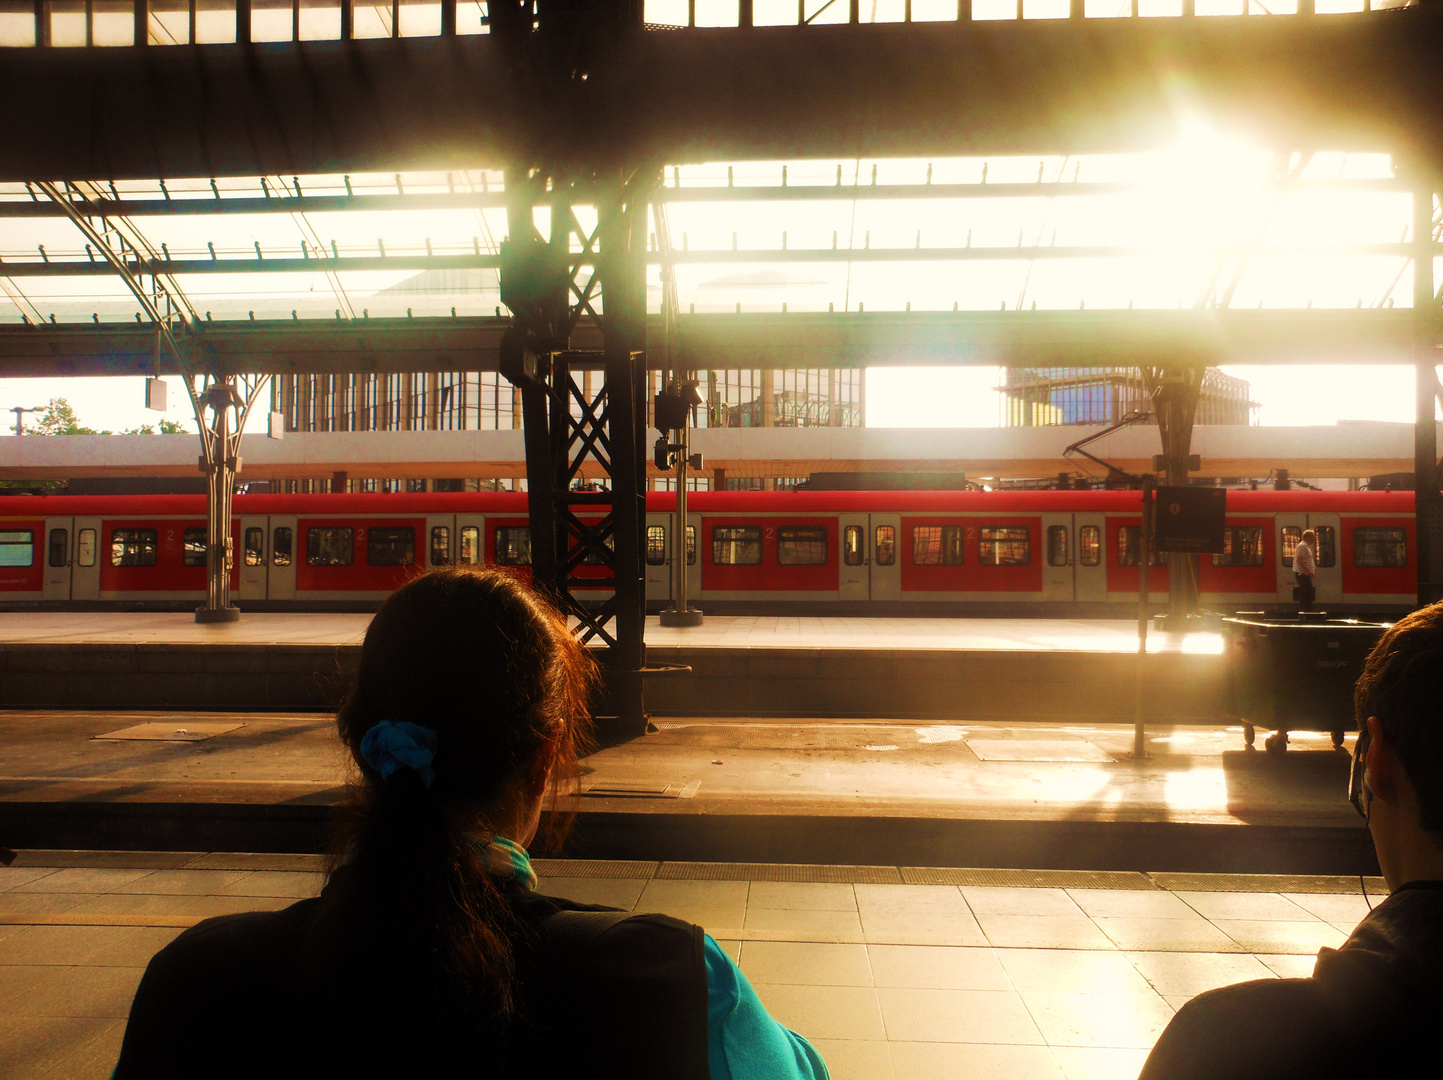 die Sonne scheint und das Warten  auf den Zug